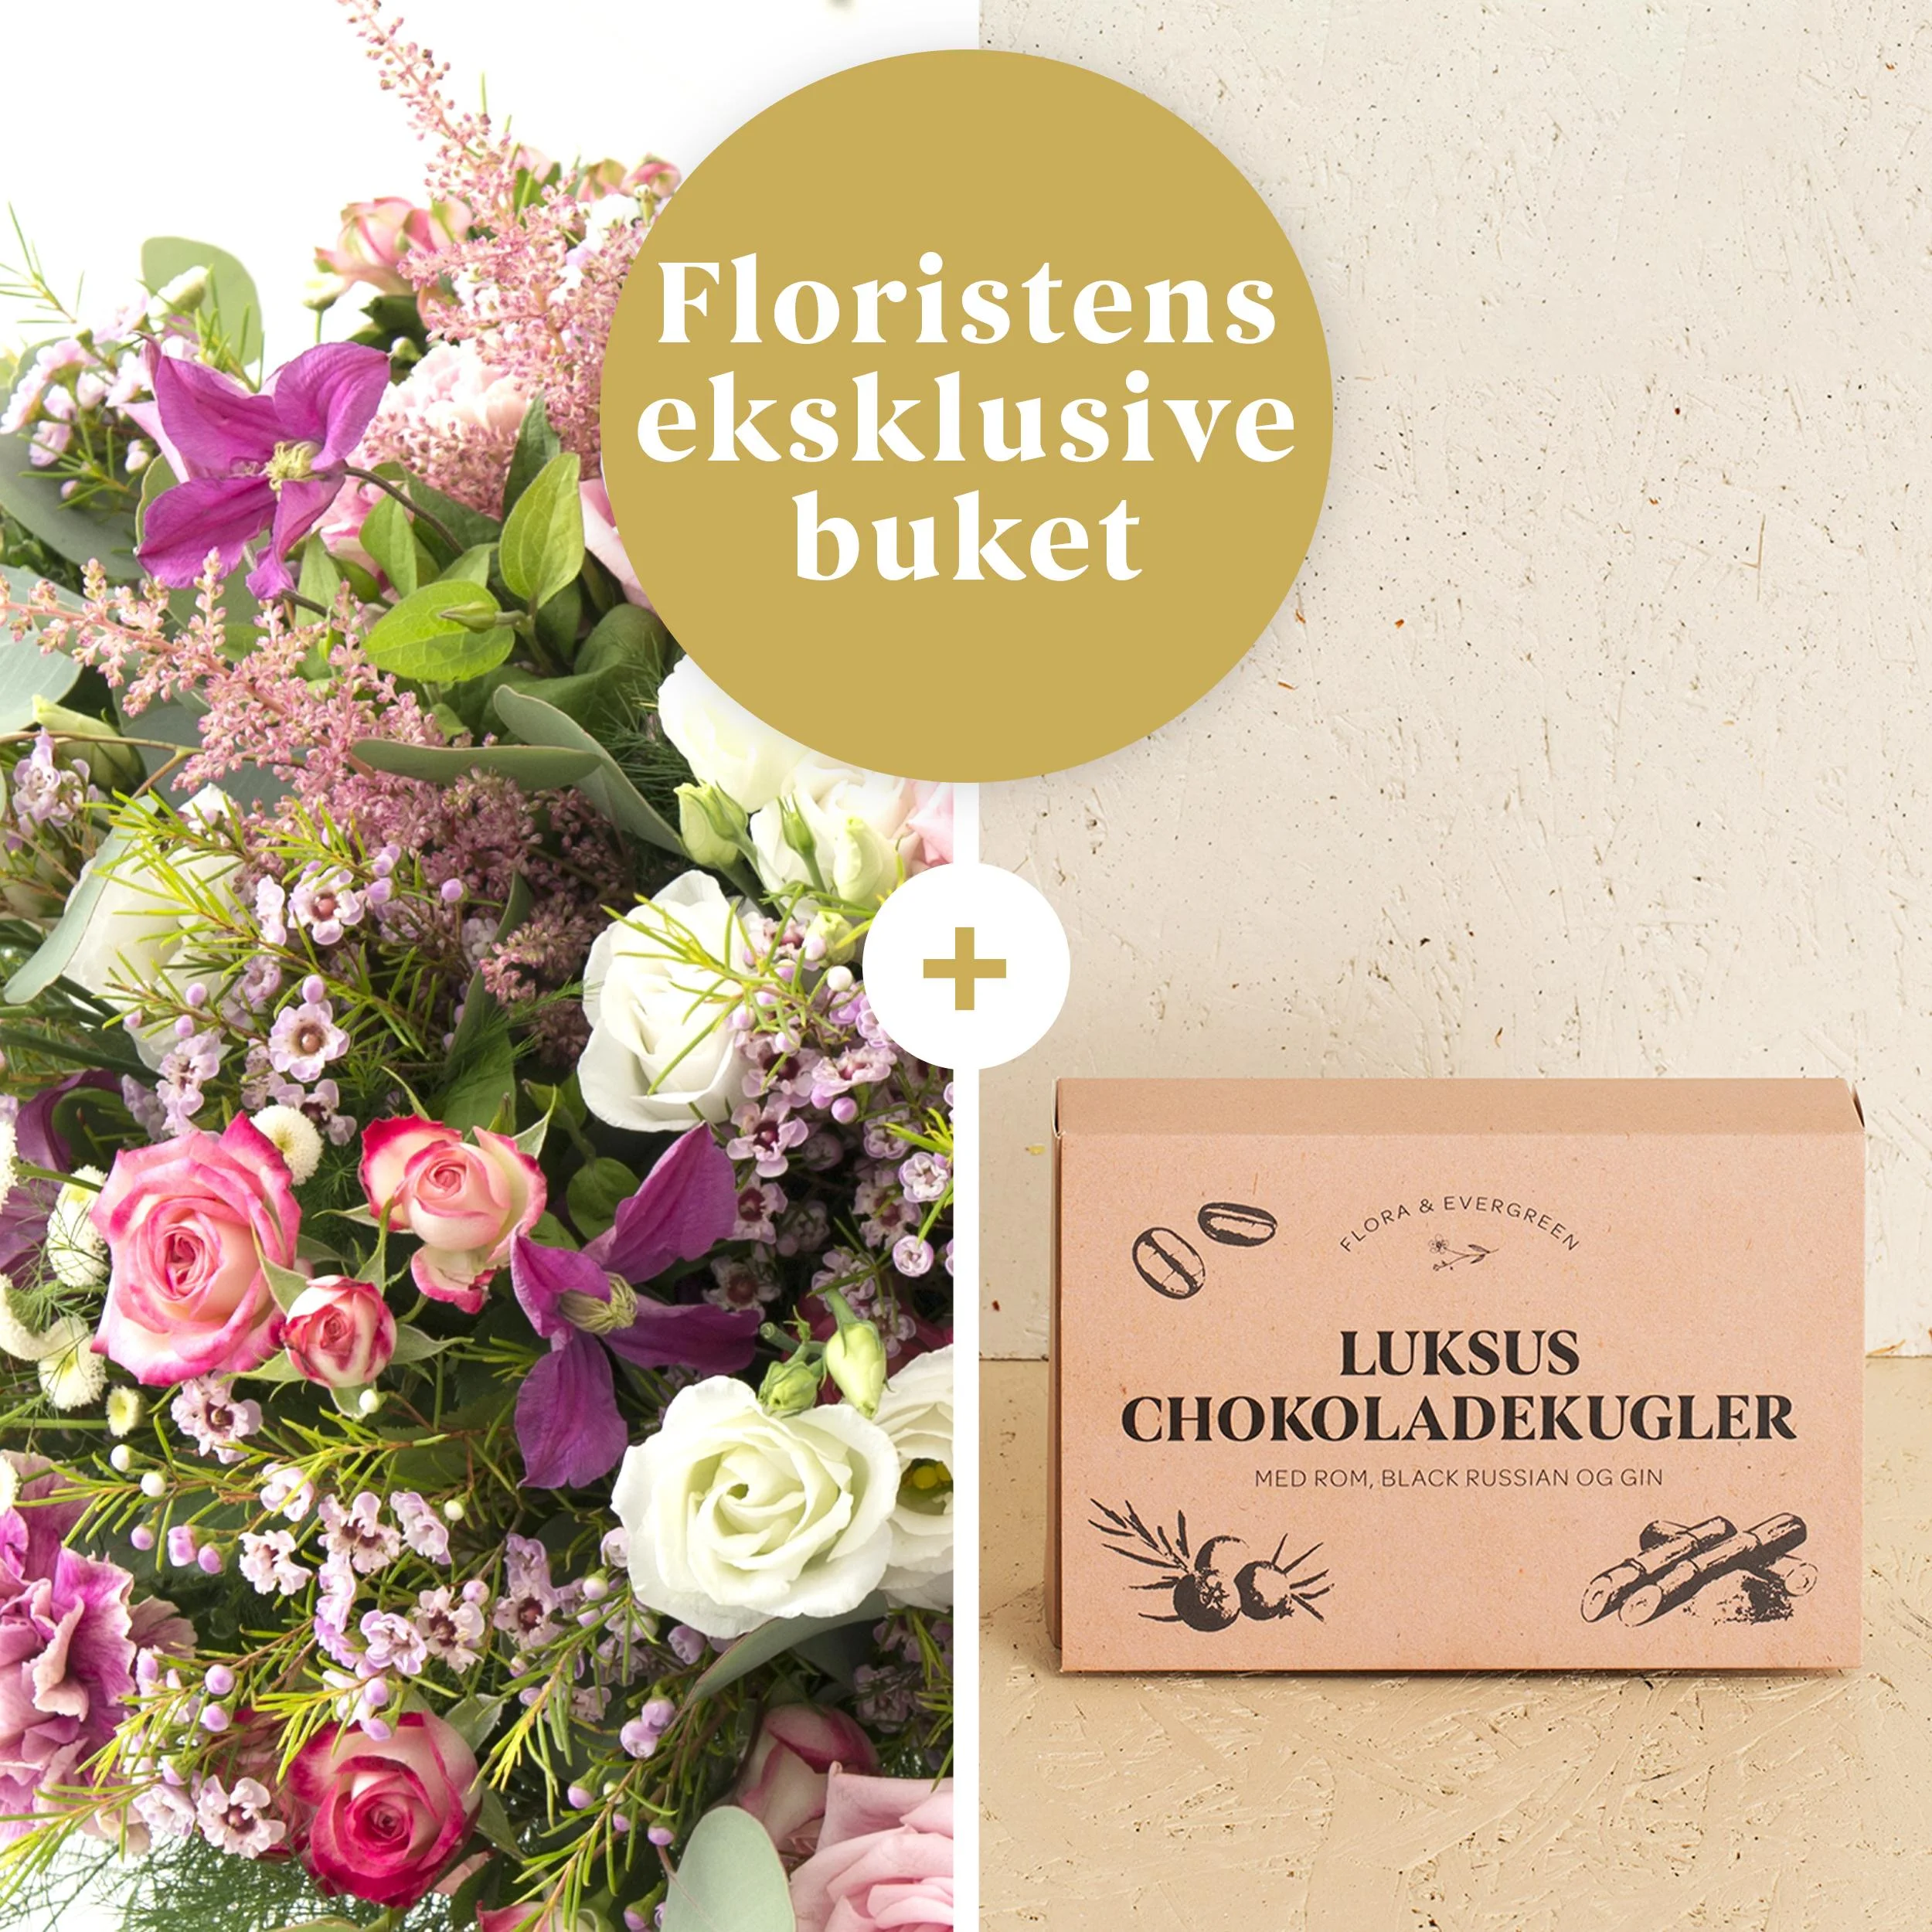 Floristens eksklusive buket med Flora og Evergreen Luksus chokoladekugler